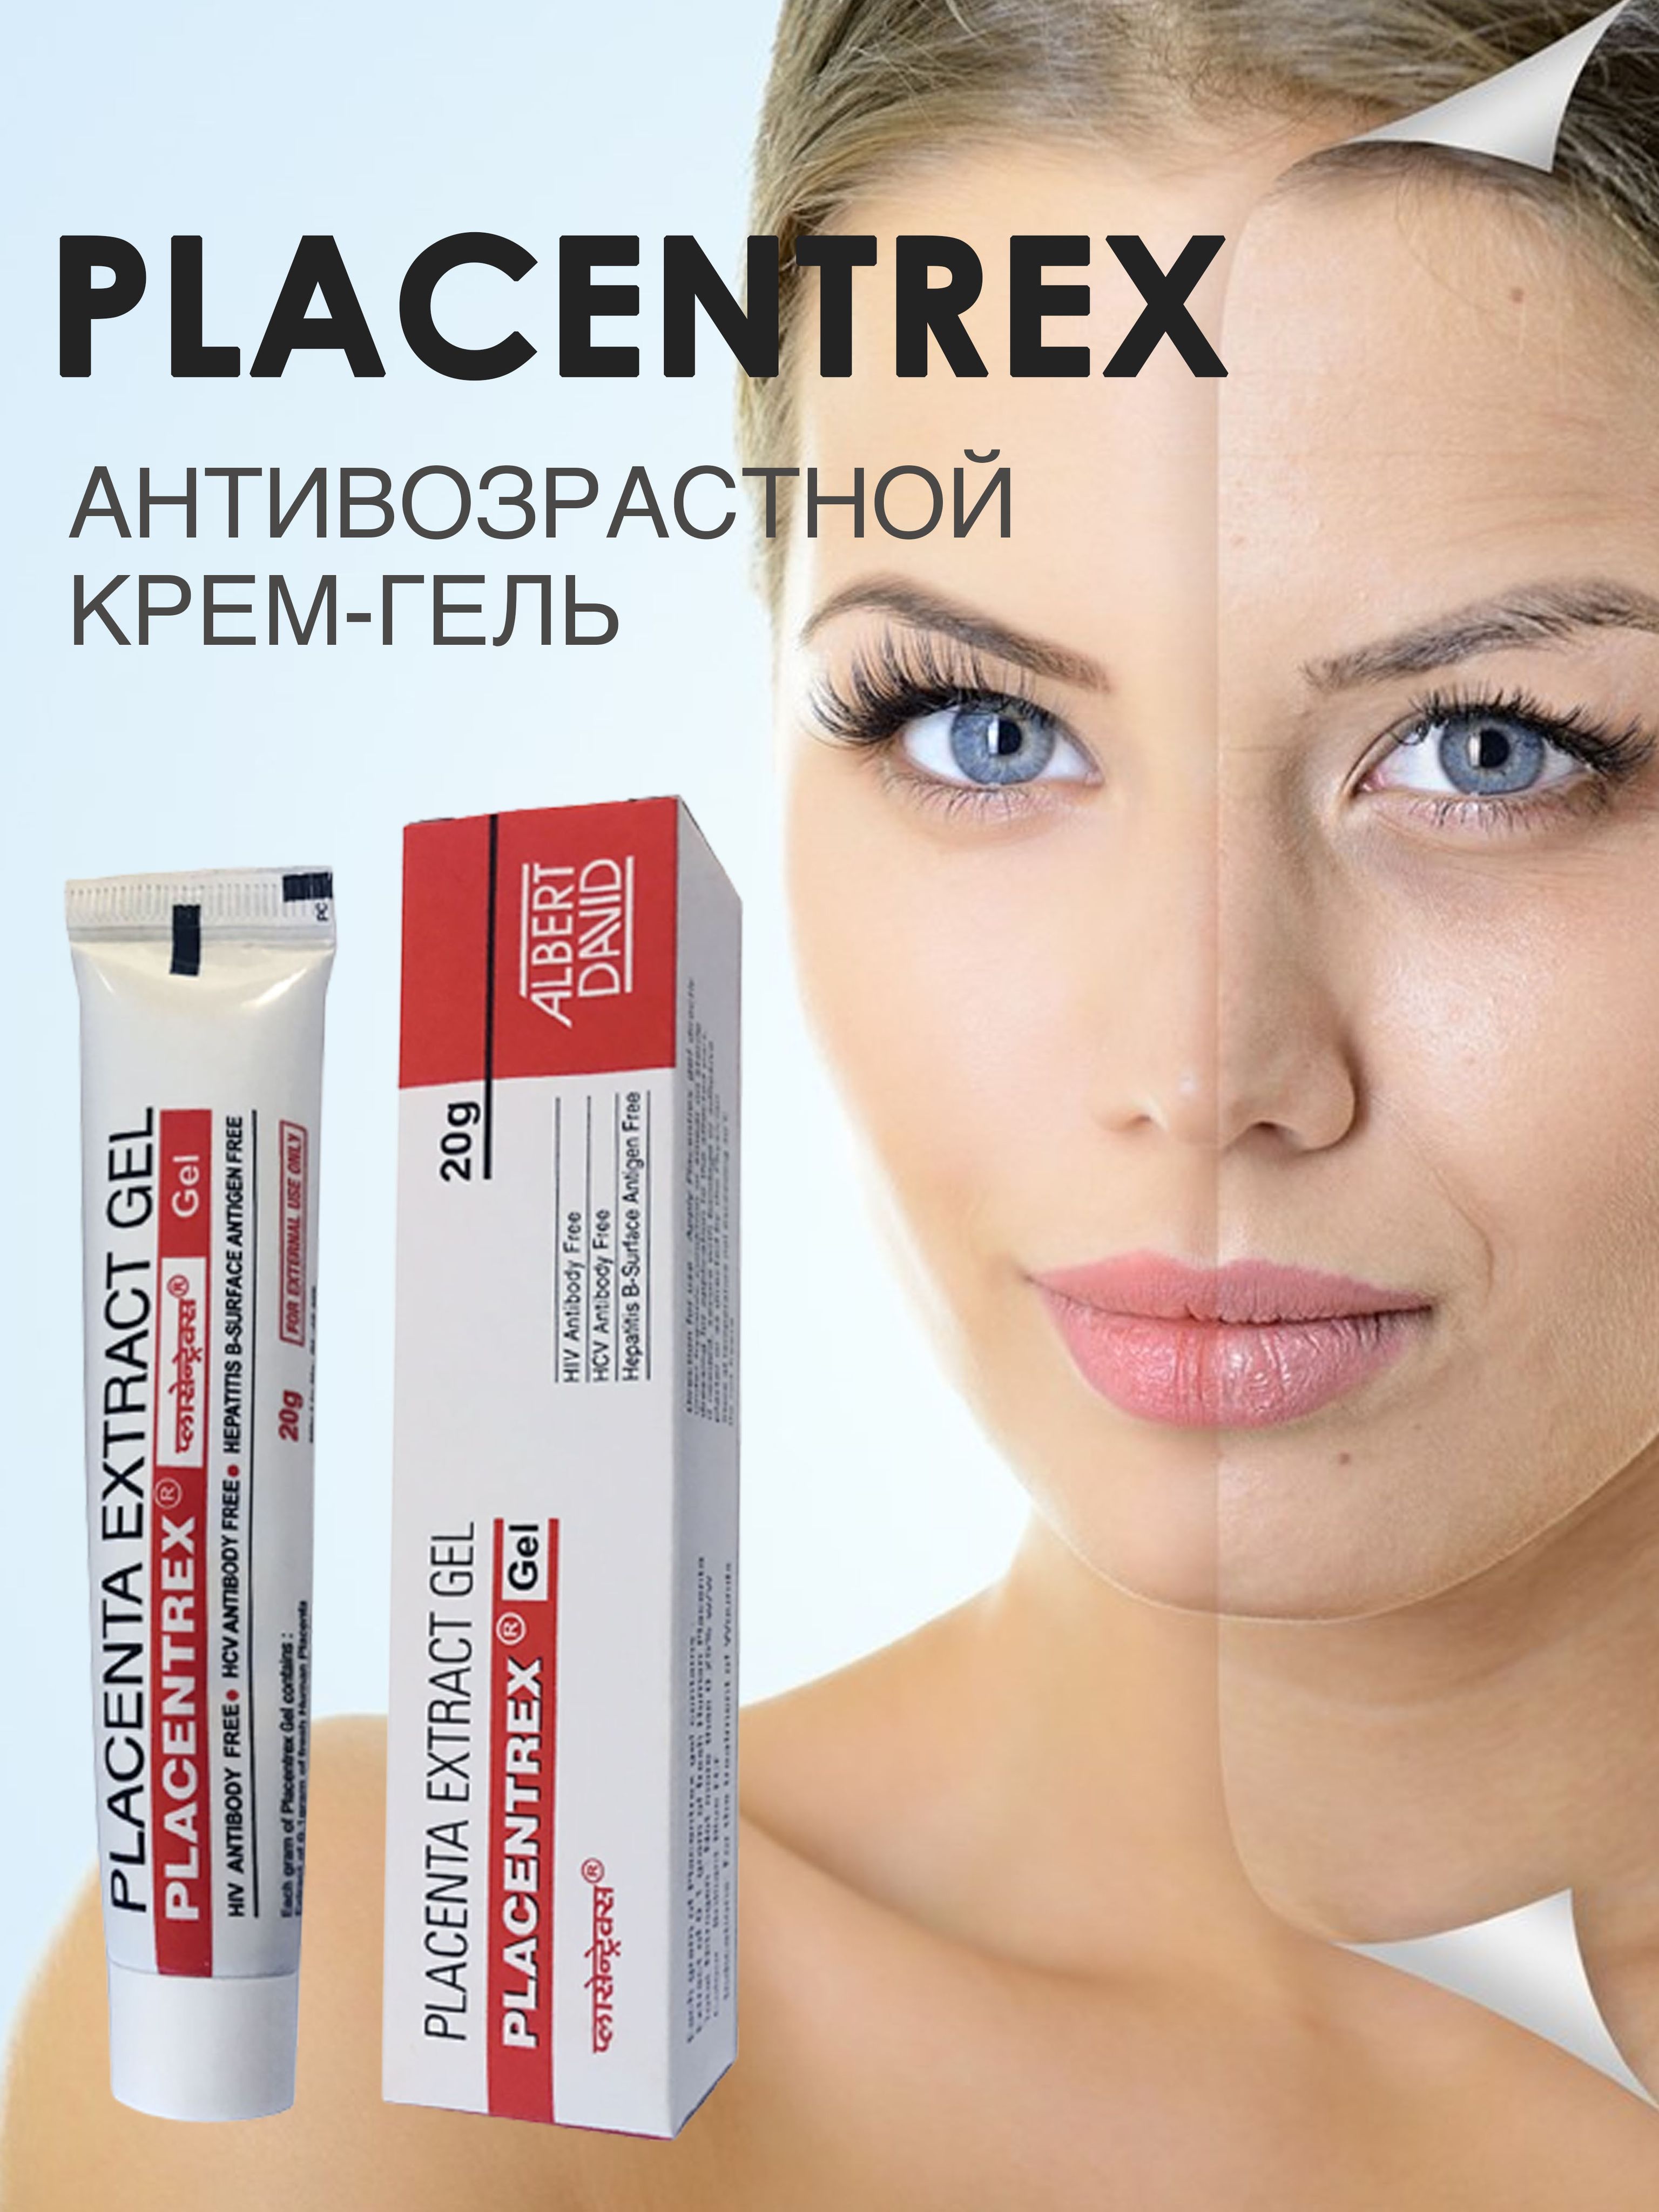 Плацентрекс placentrex gel. Placentrex гель. Placentrex Gel Индия. Placenta extract Gel. Гель "Плацентрекс" с экстрактом плаценты от морщин Placentrex placenta extract Gel.